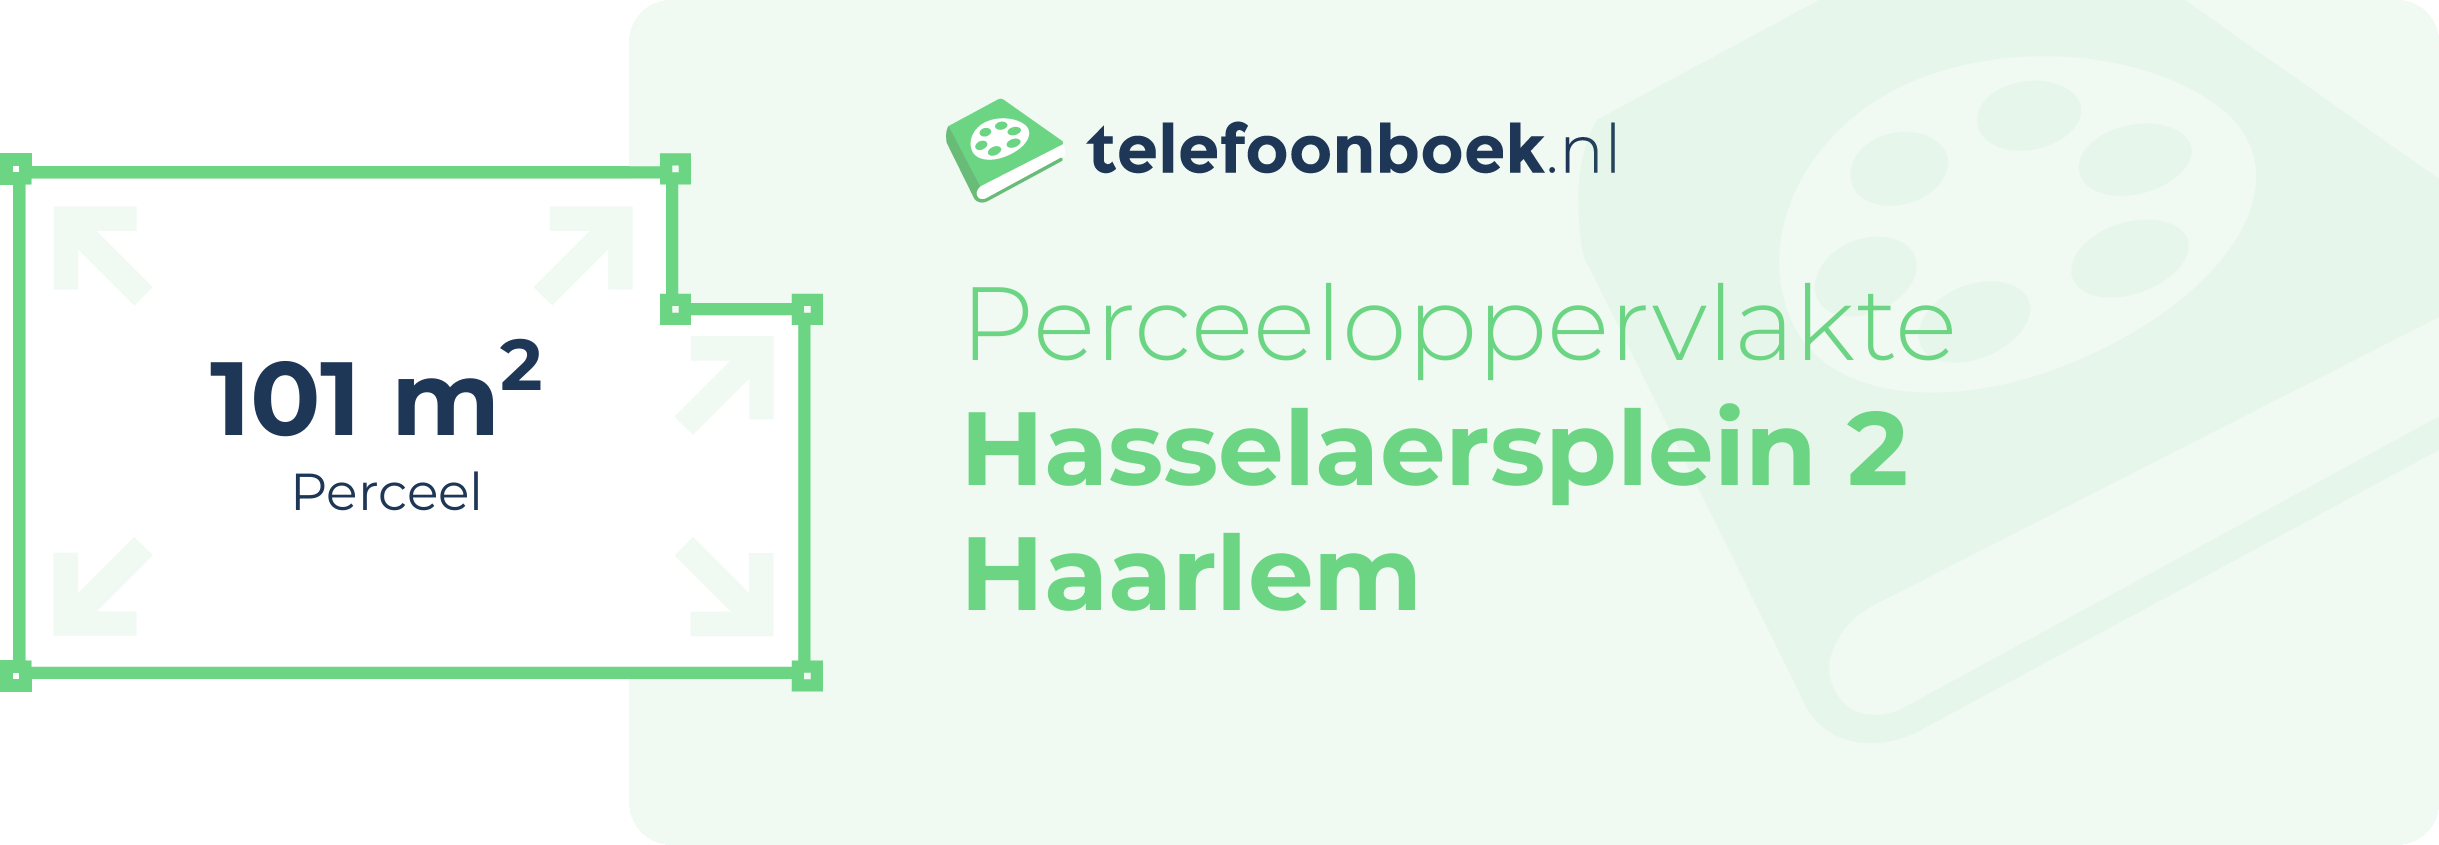 Perceeloppervlakte Hasselaersplein 2 Haarlem